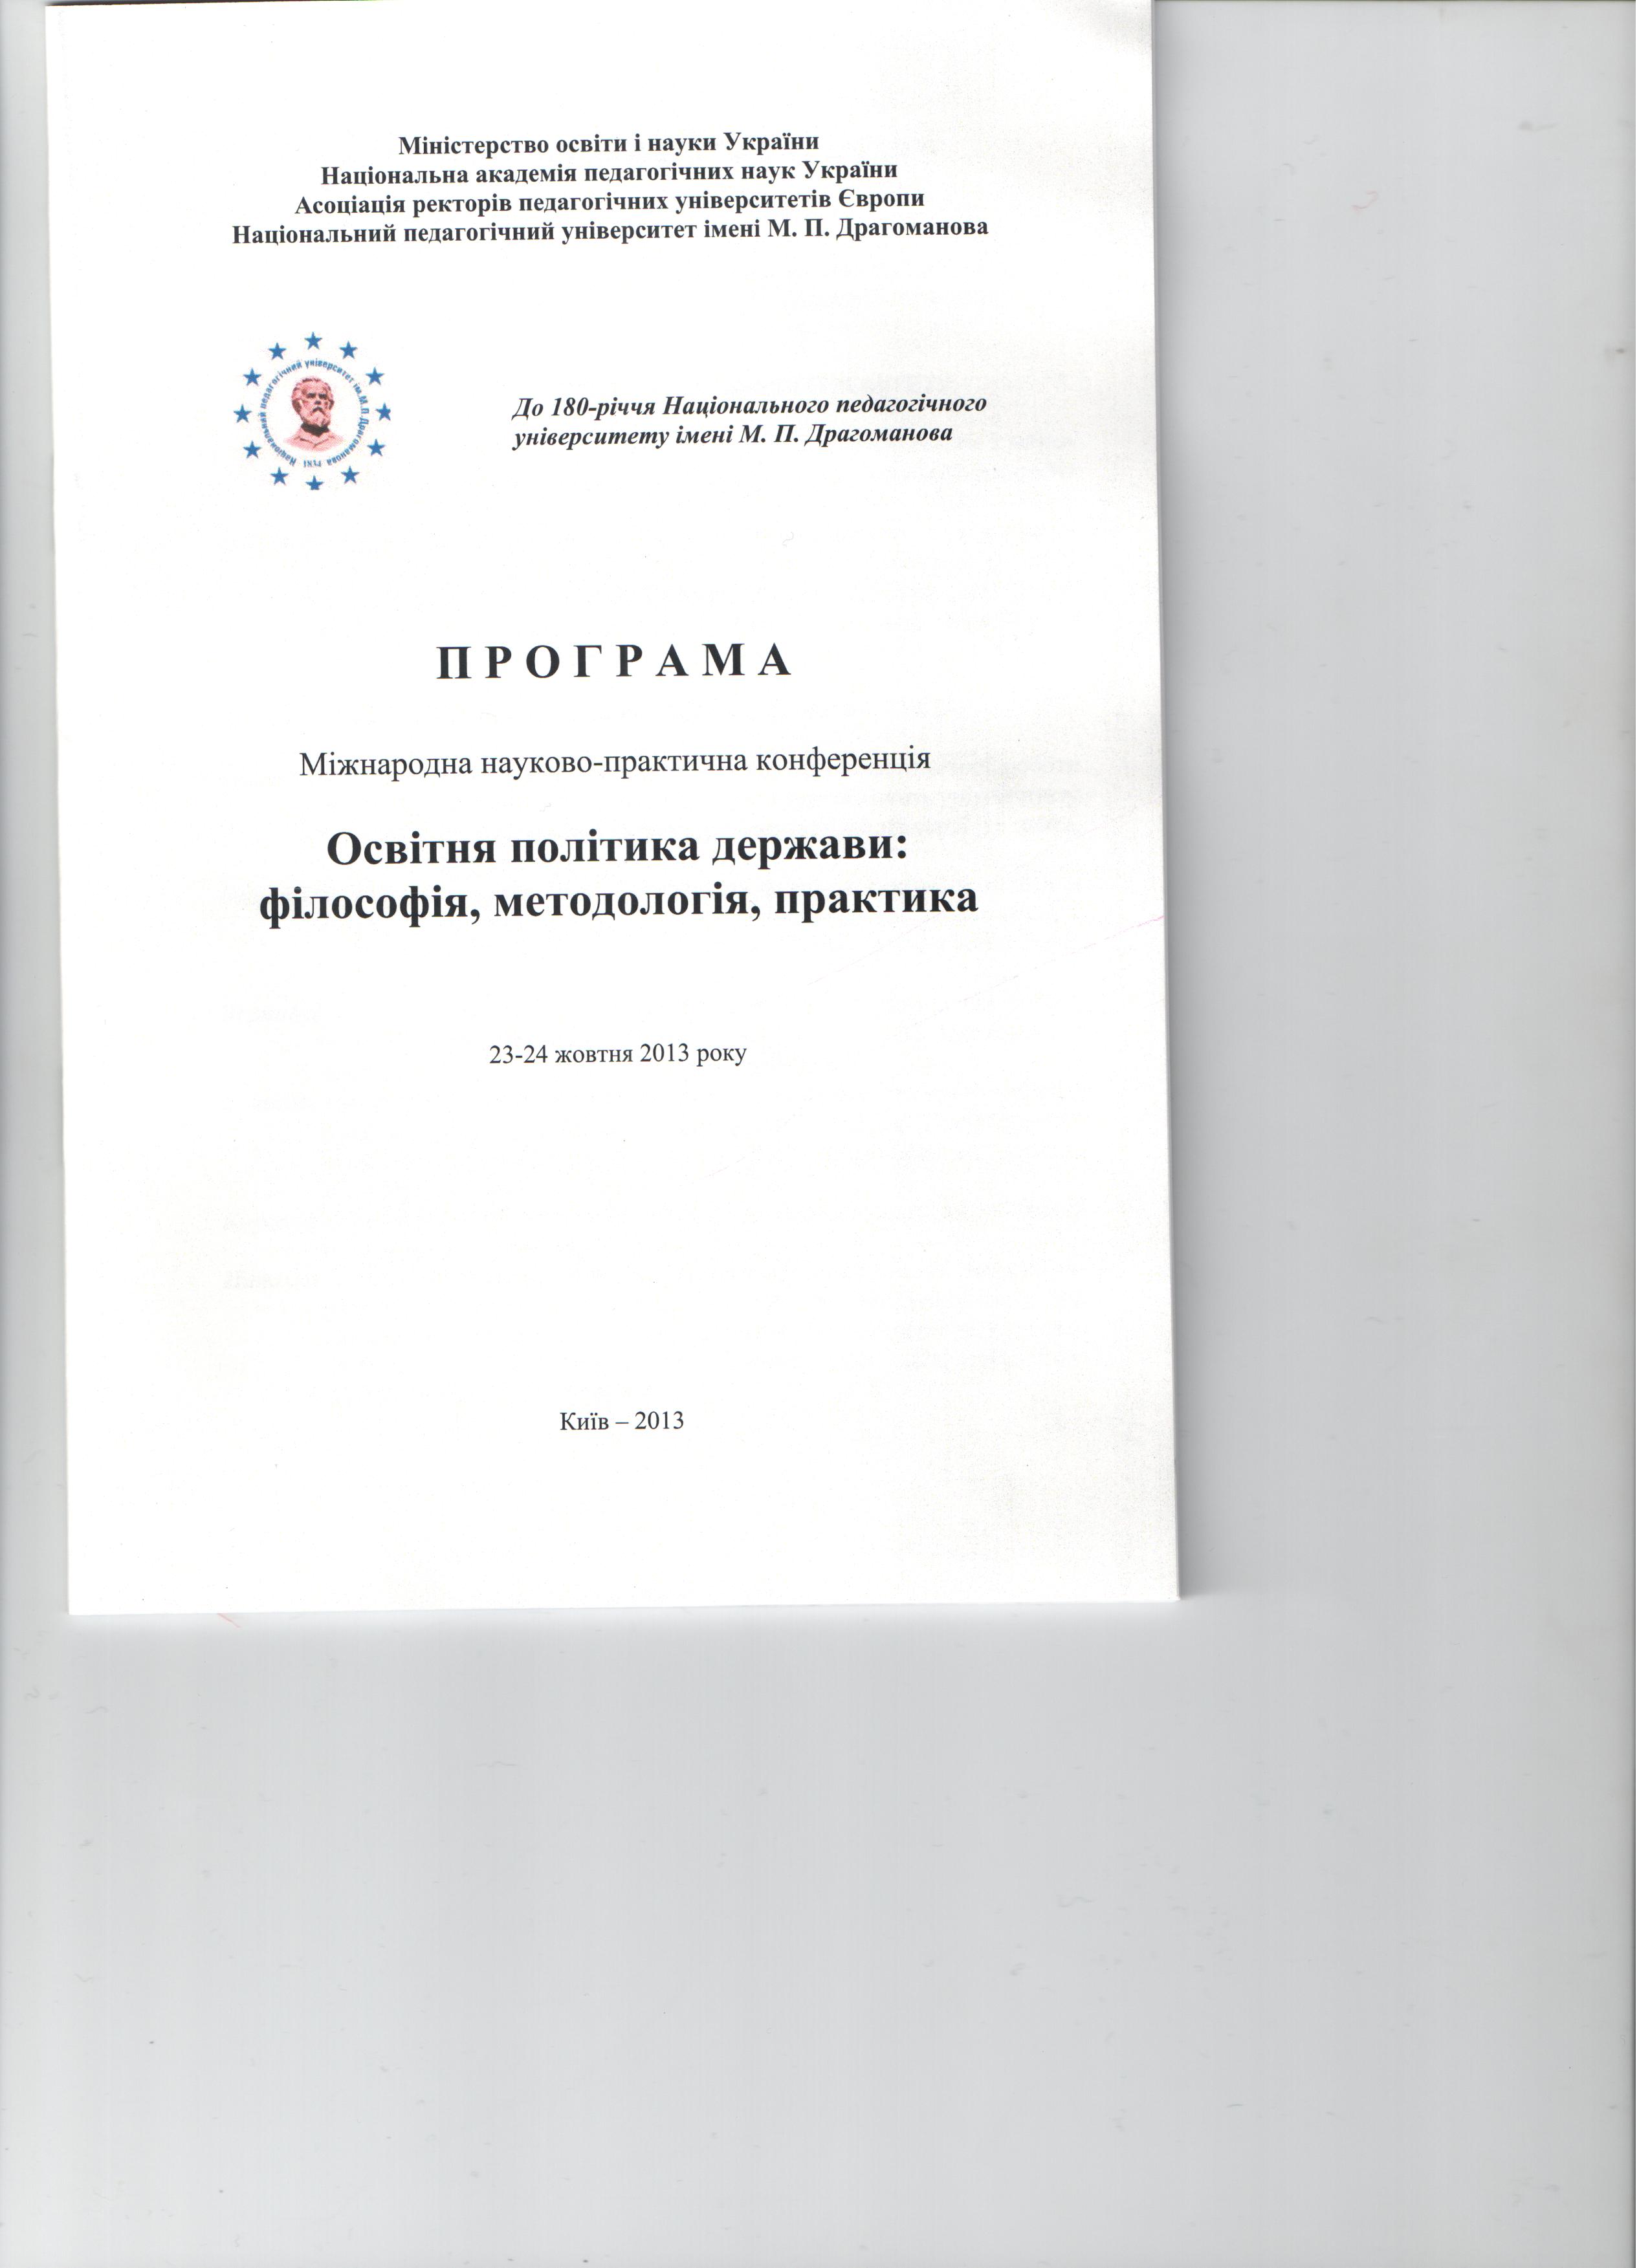 document